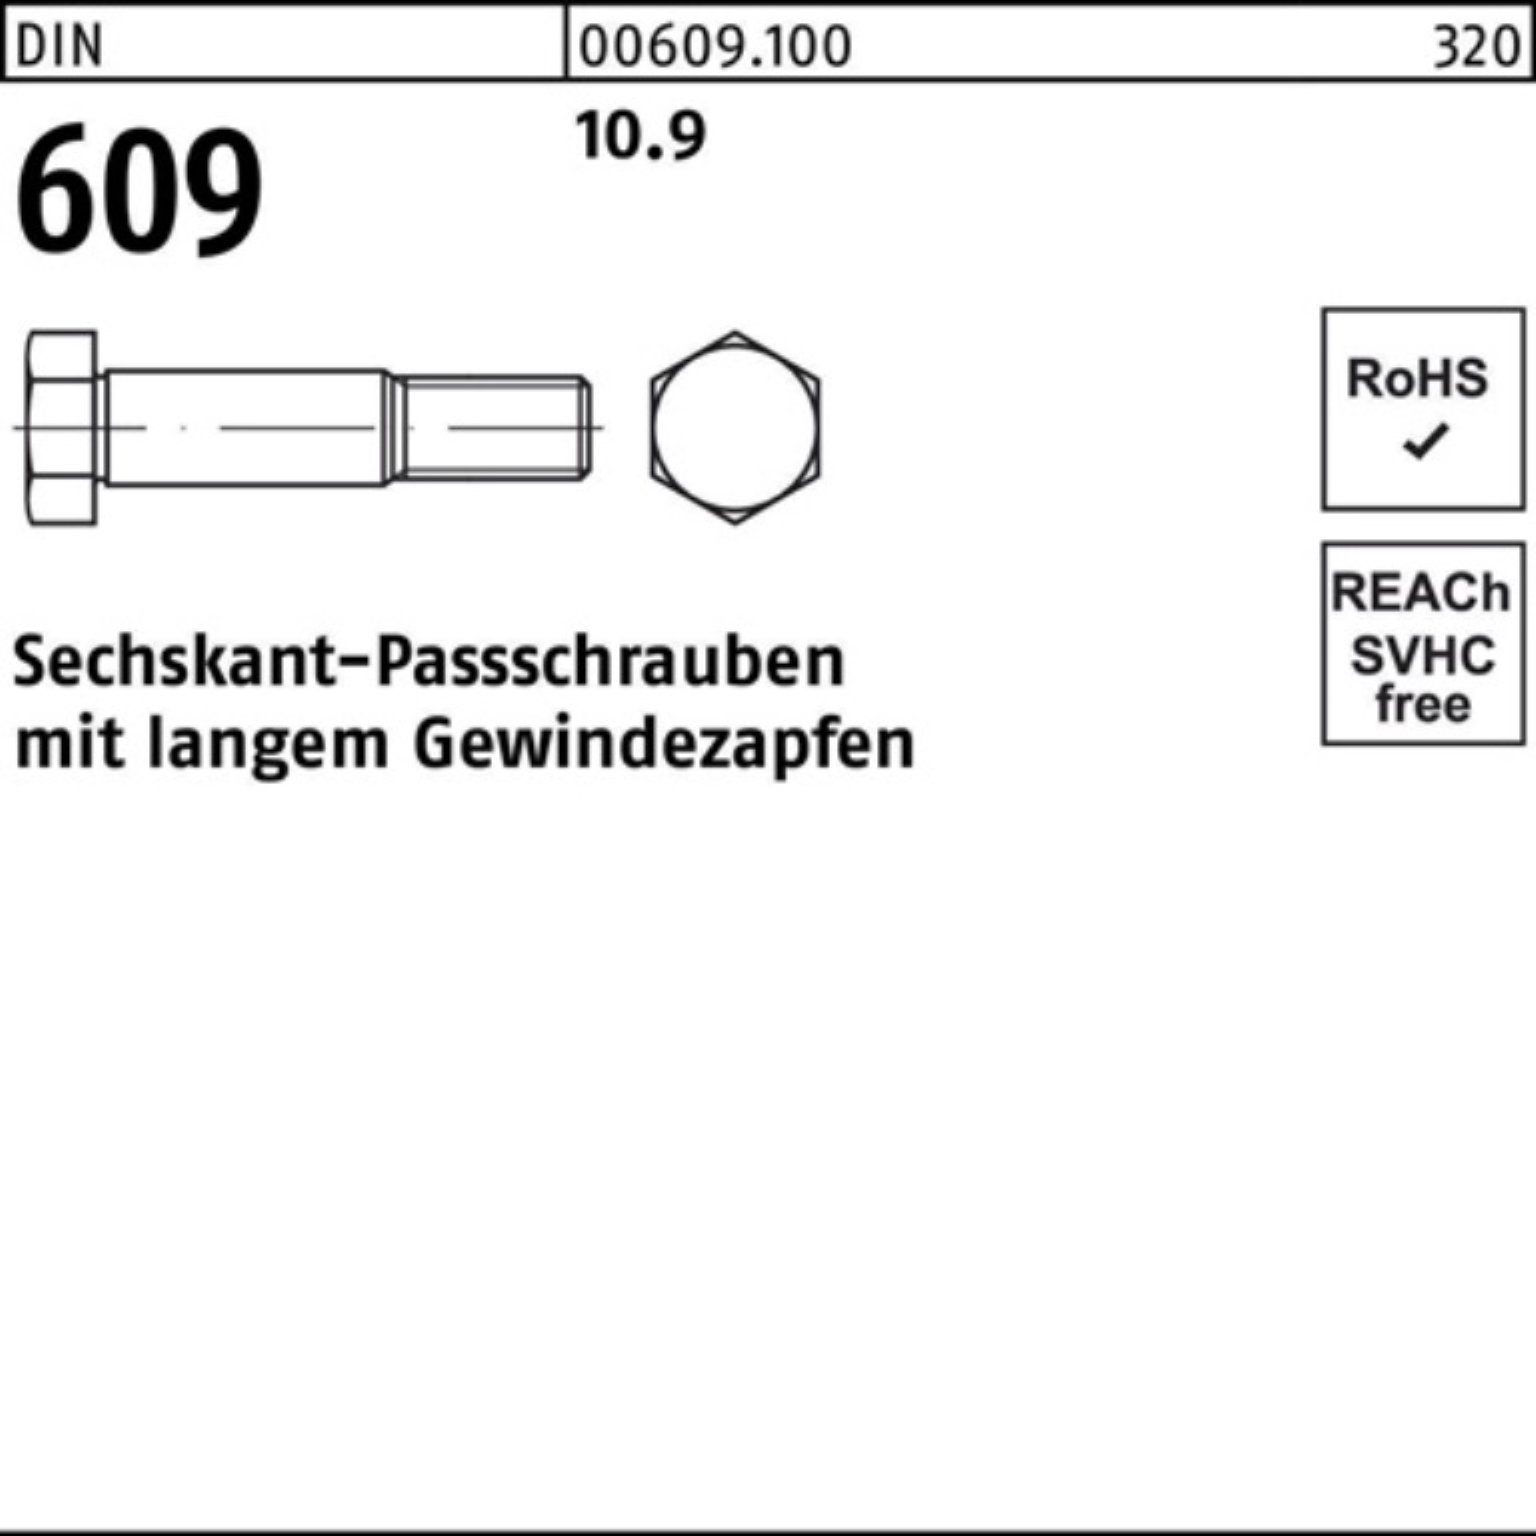 Pack DIN Schraube Reyher M8x 609 langem 100er Gewindezapfen Sechskantpassschraube 1 40